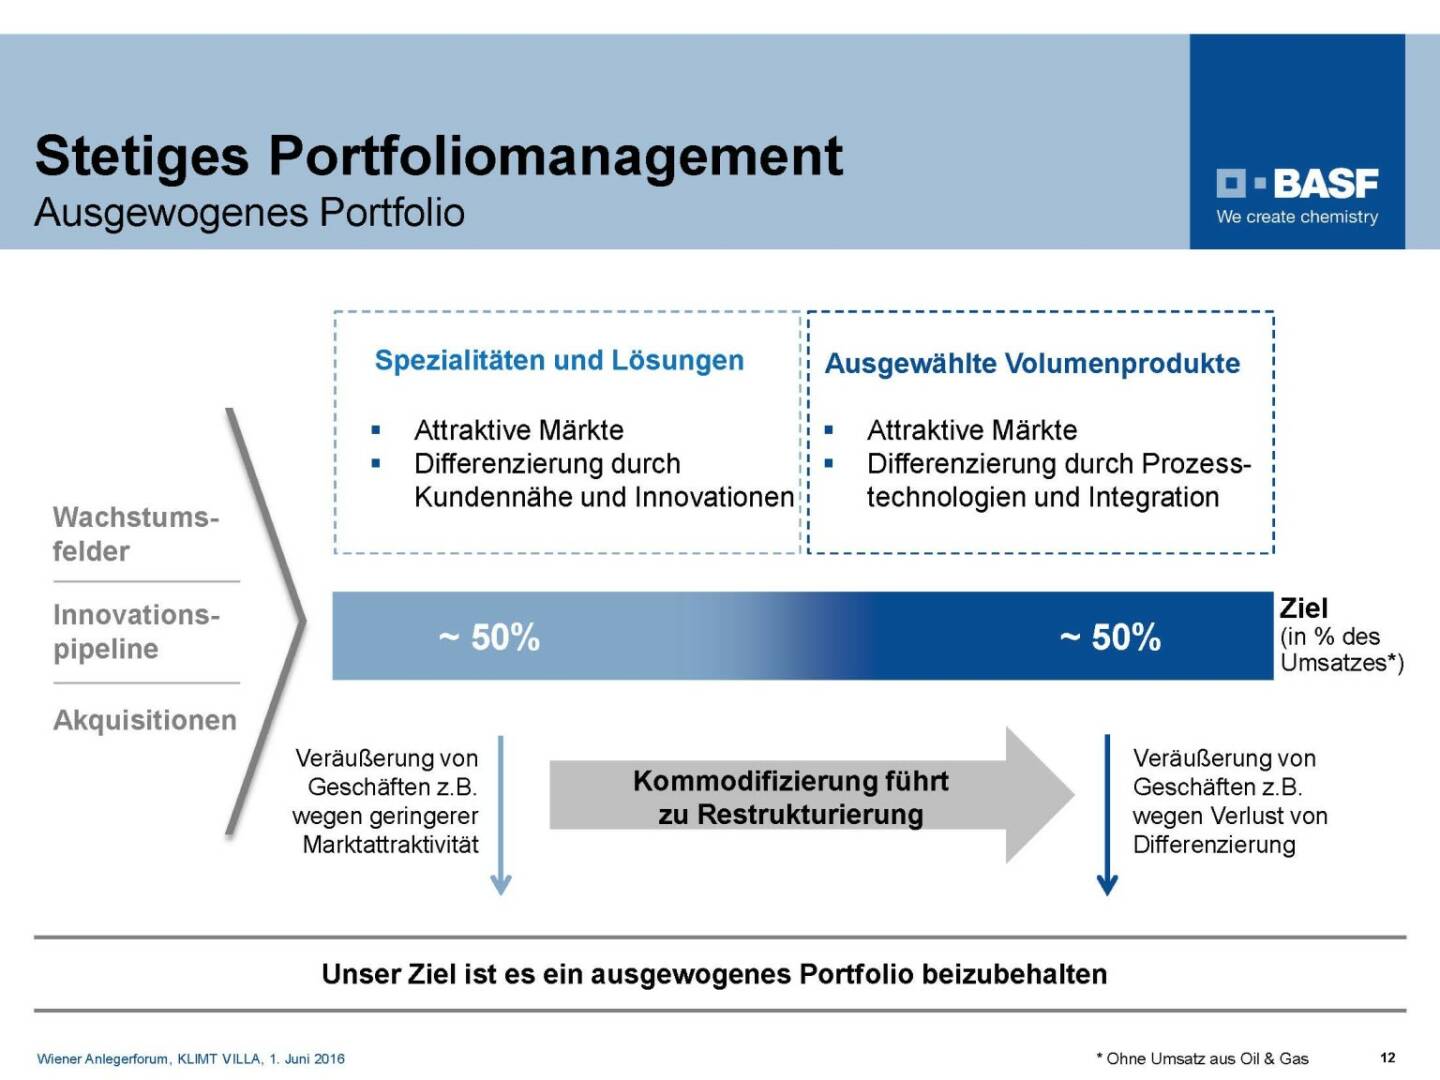 BASF - Stetiges Portfoliomanagement